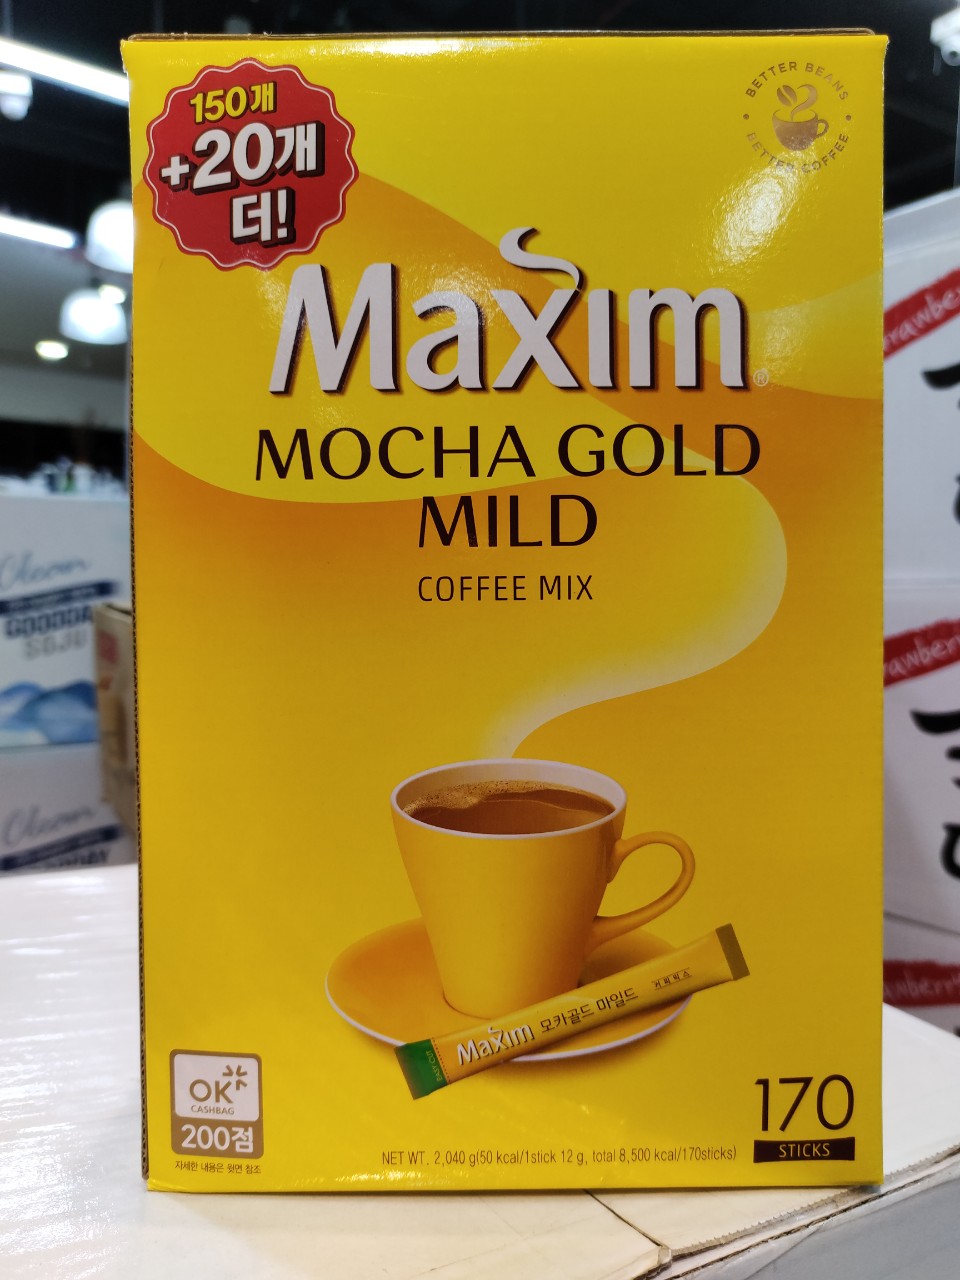 CÀ PHÊ MAXIM HÀN QUỐC MOCHA GOLD 170 GÓI -